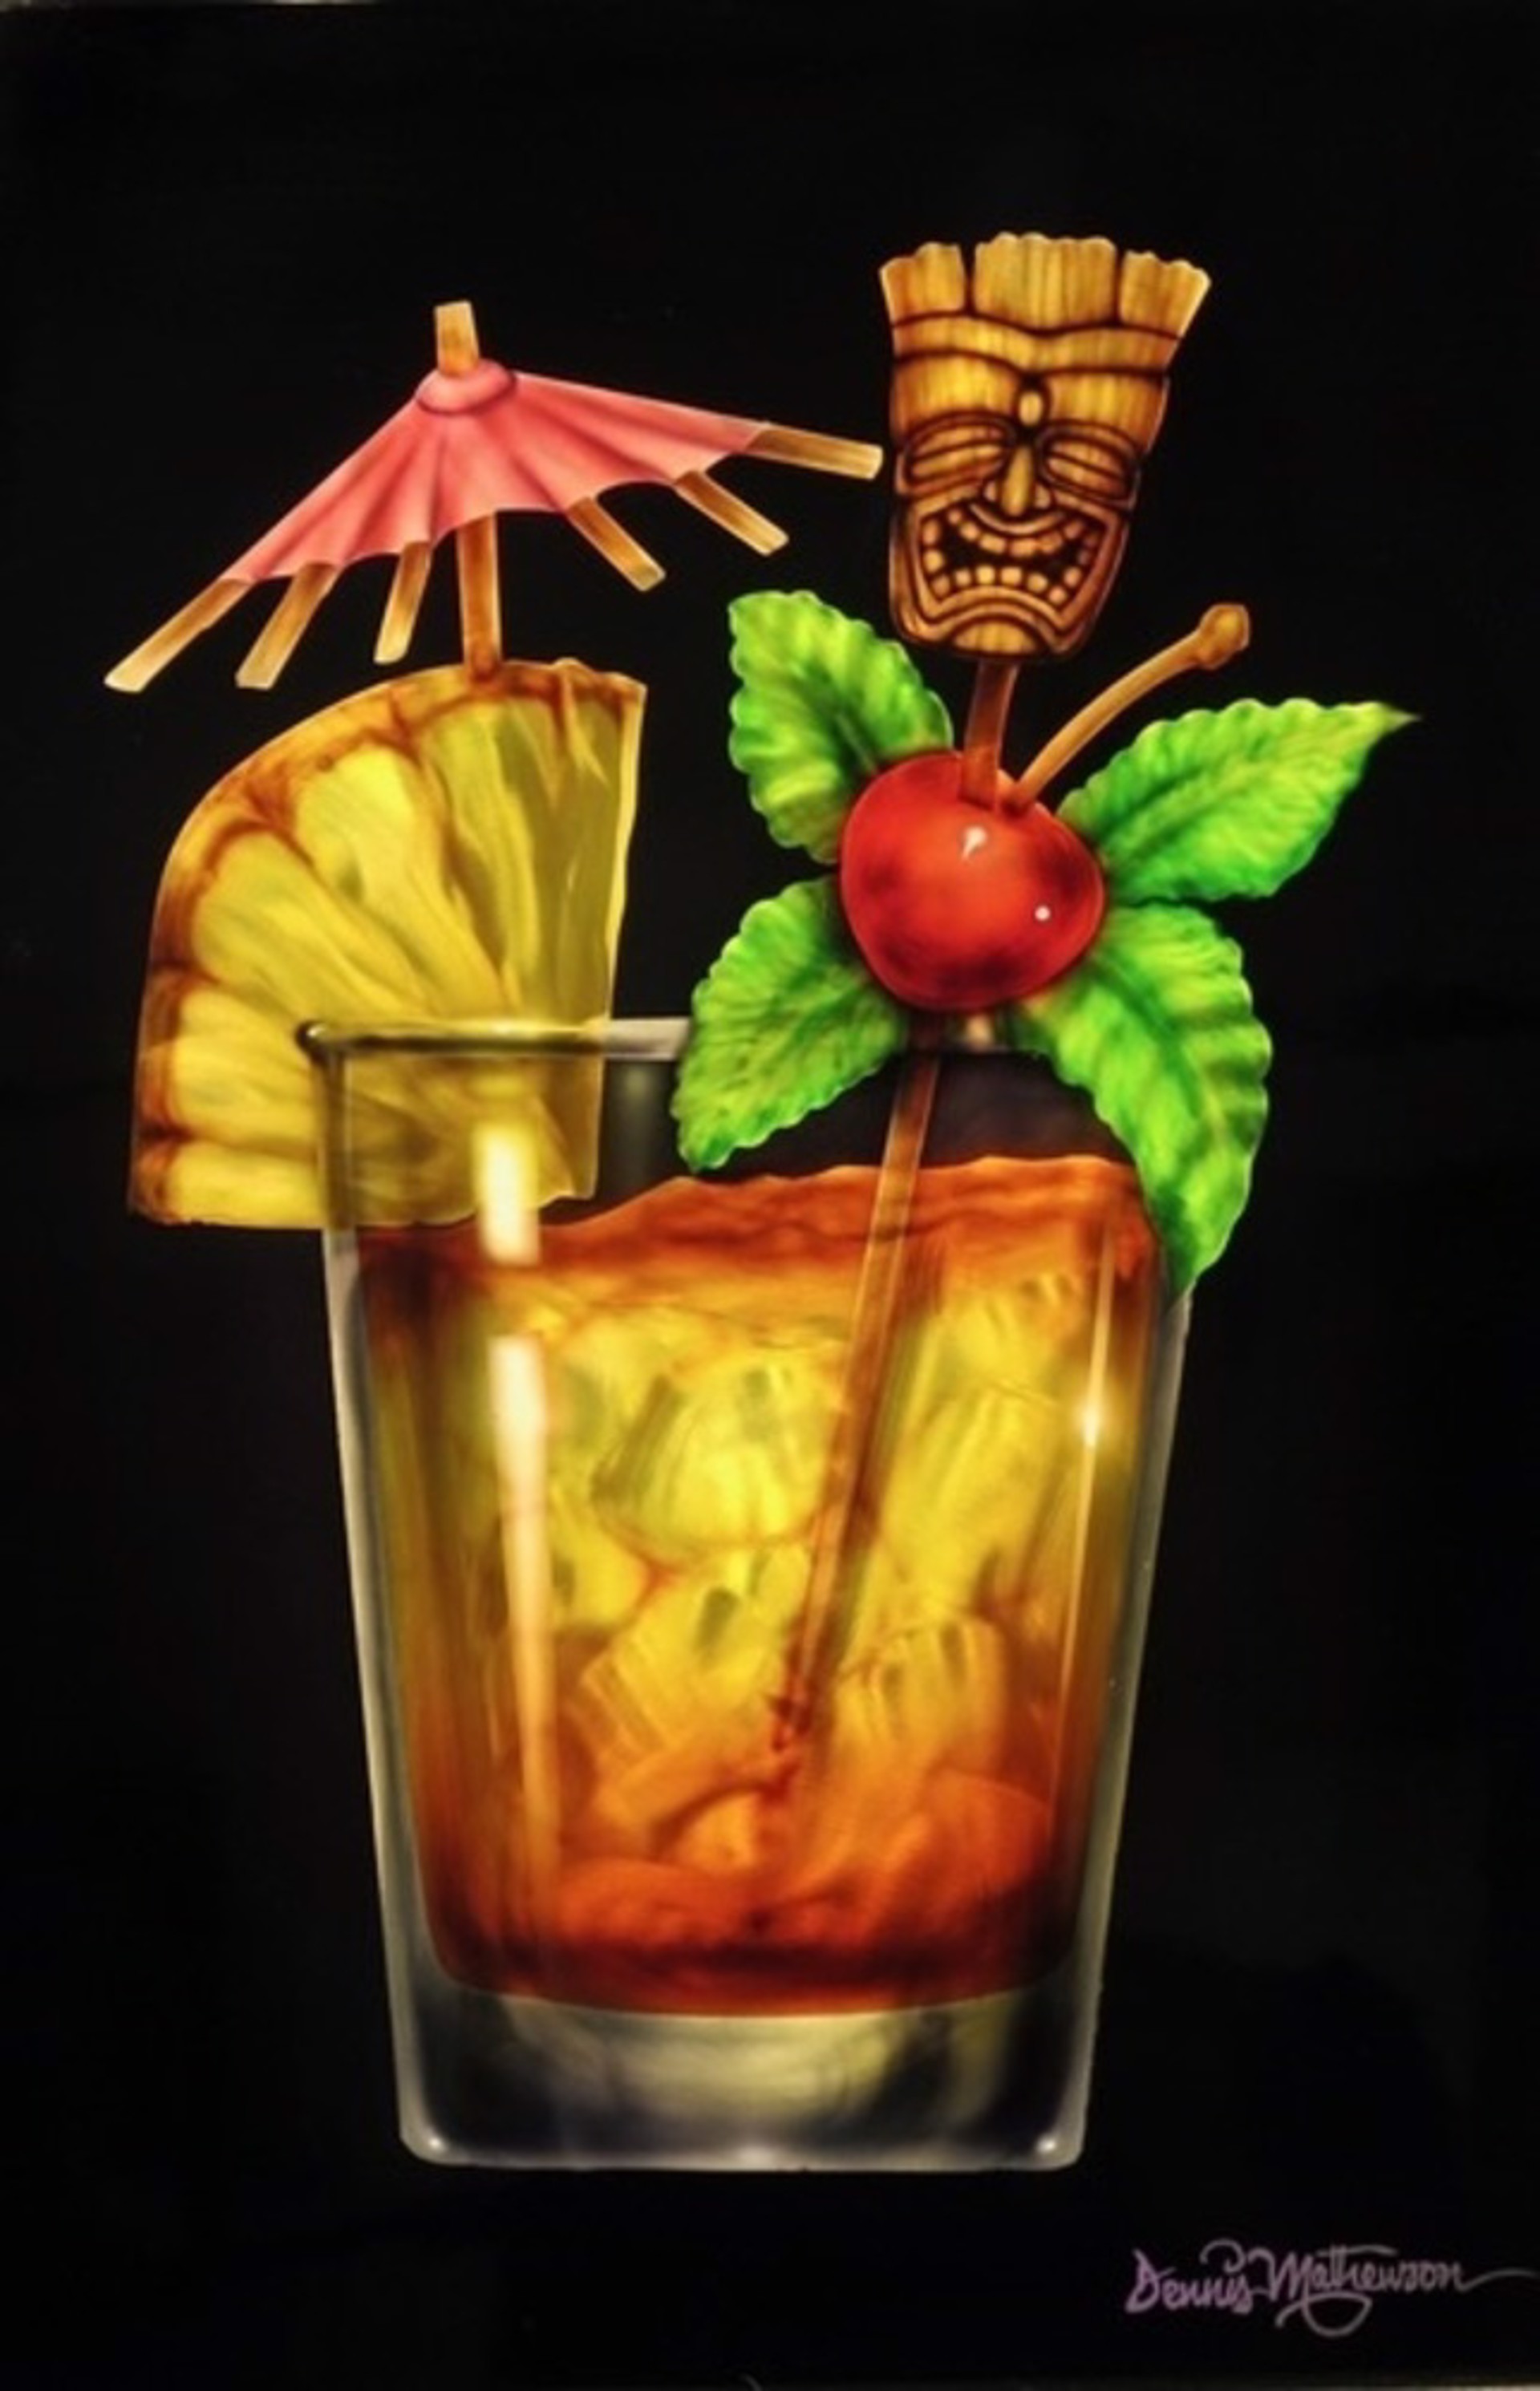 Tiki Bar, Mai Tai by Dennis Mathewson